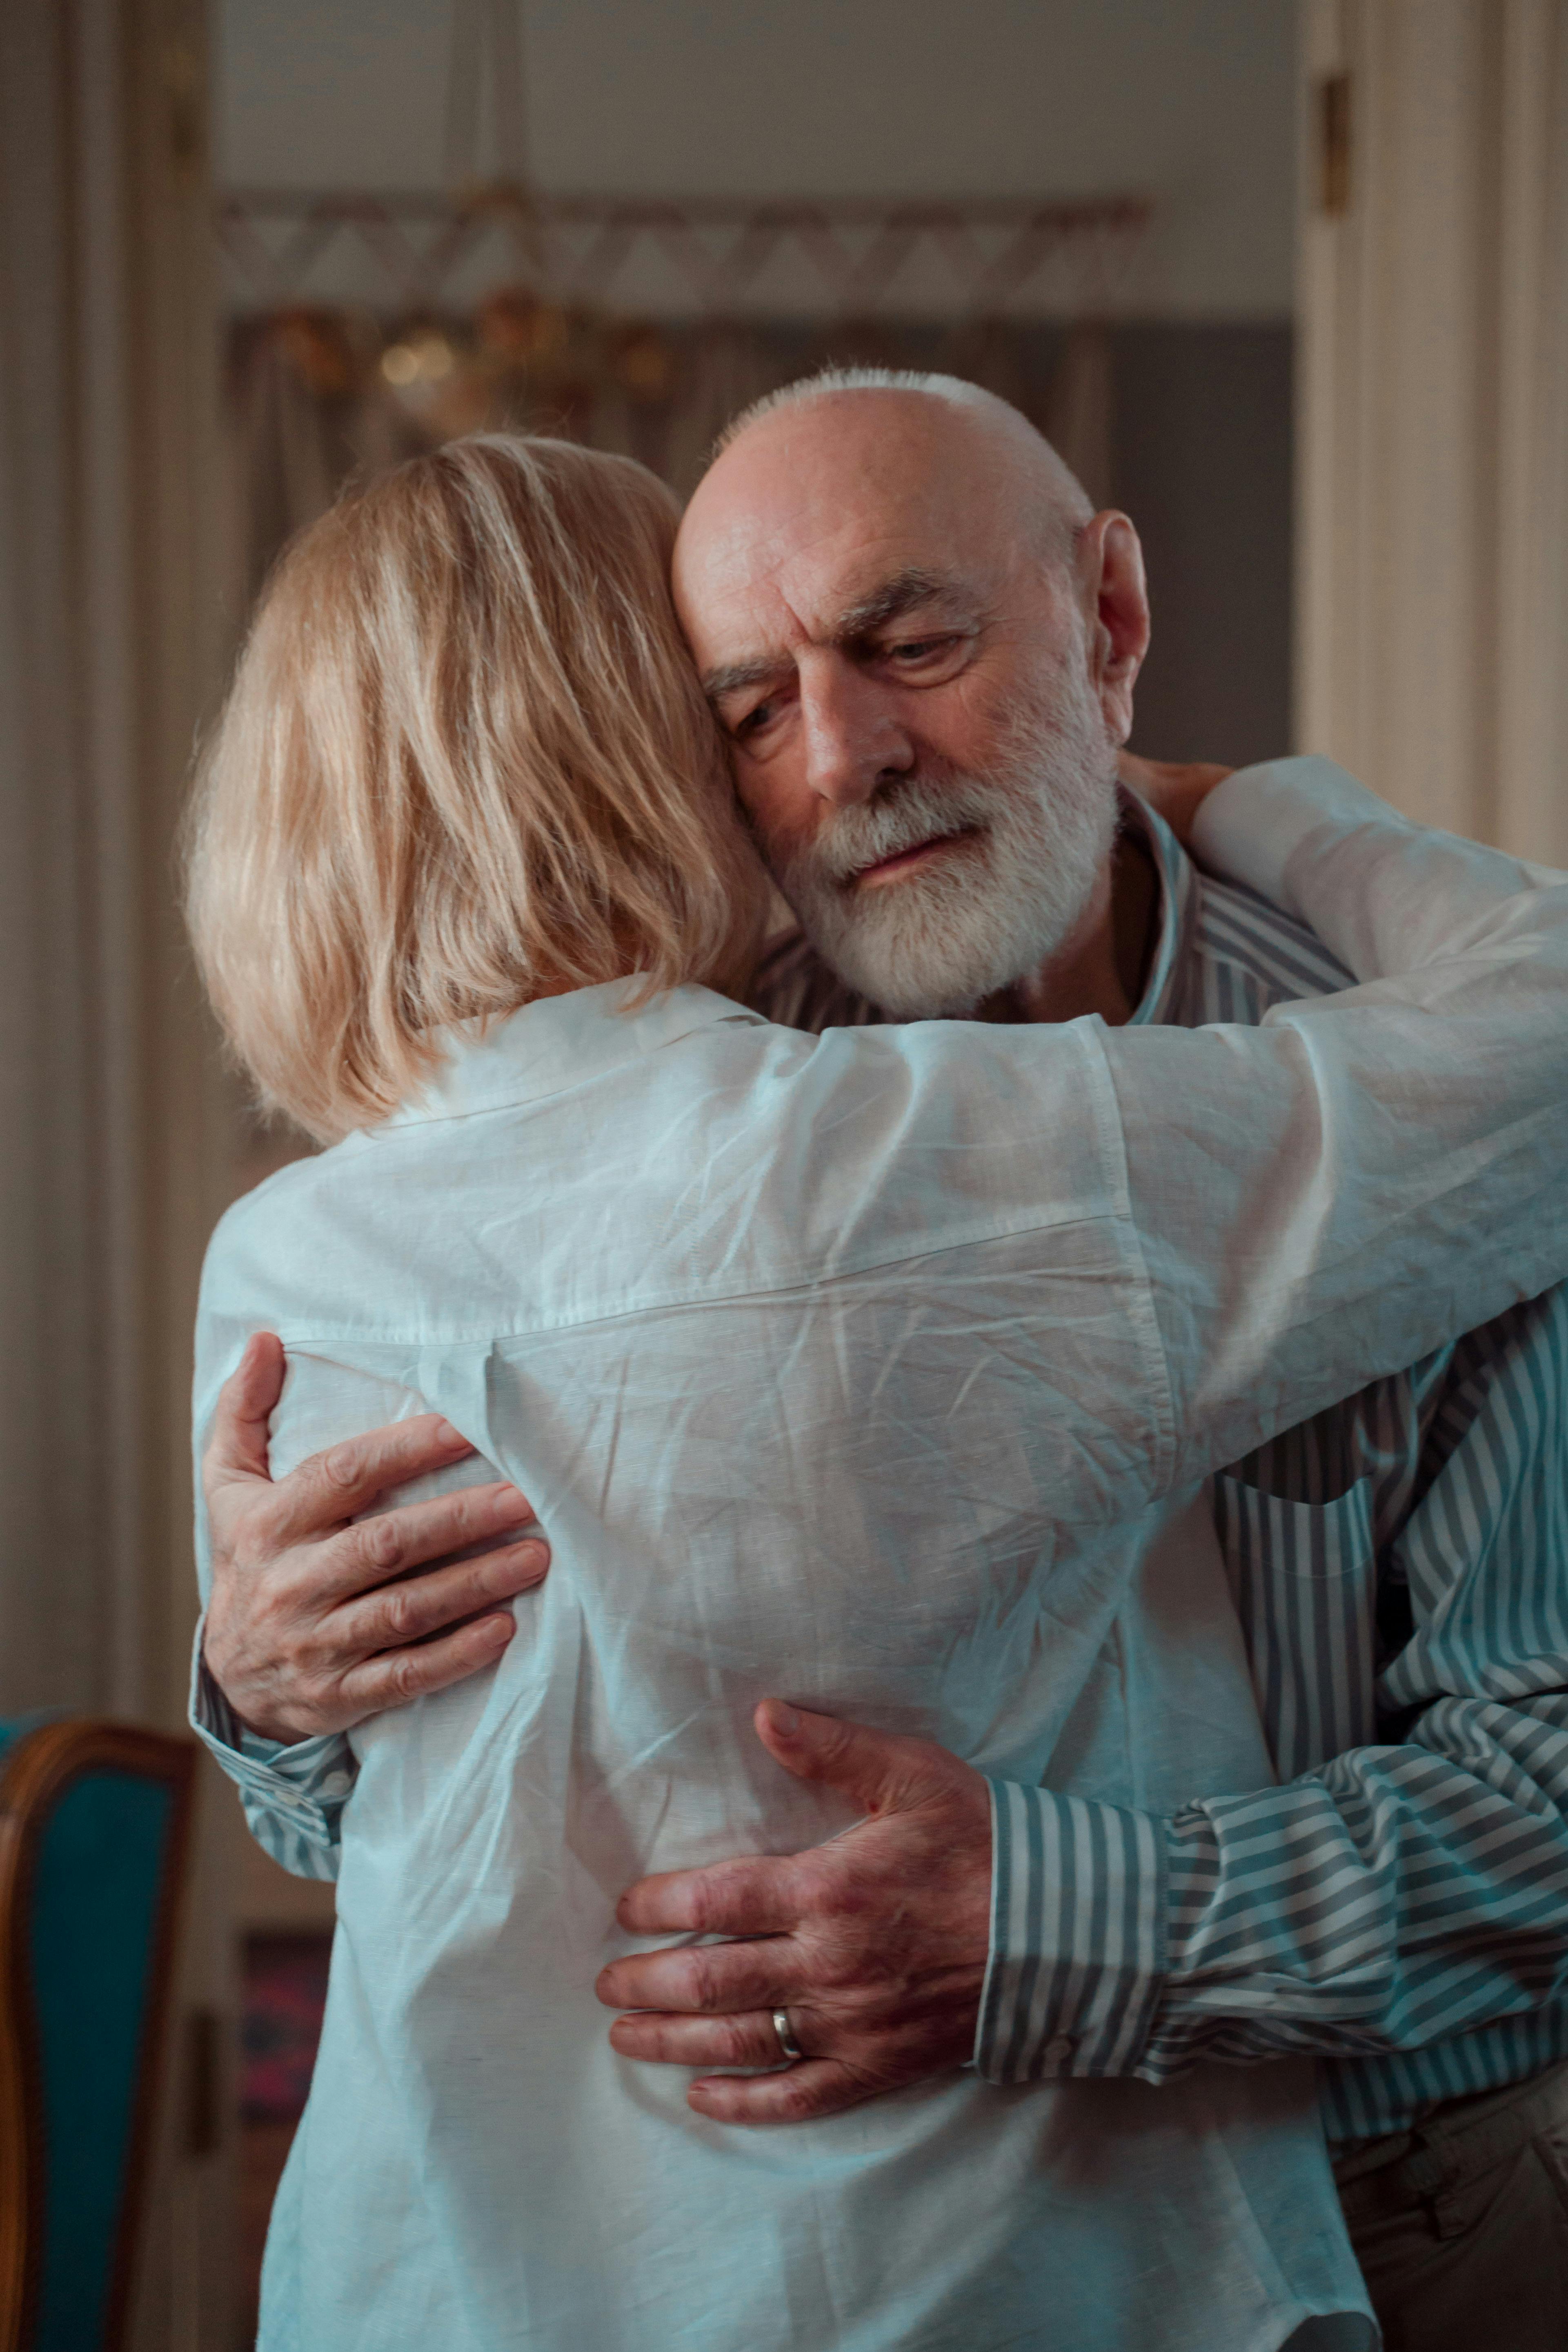 A senior man hugging his daughter | Source: Pexels